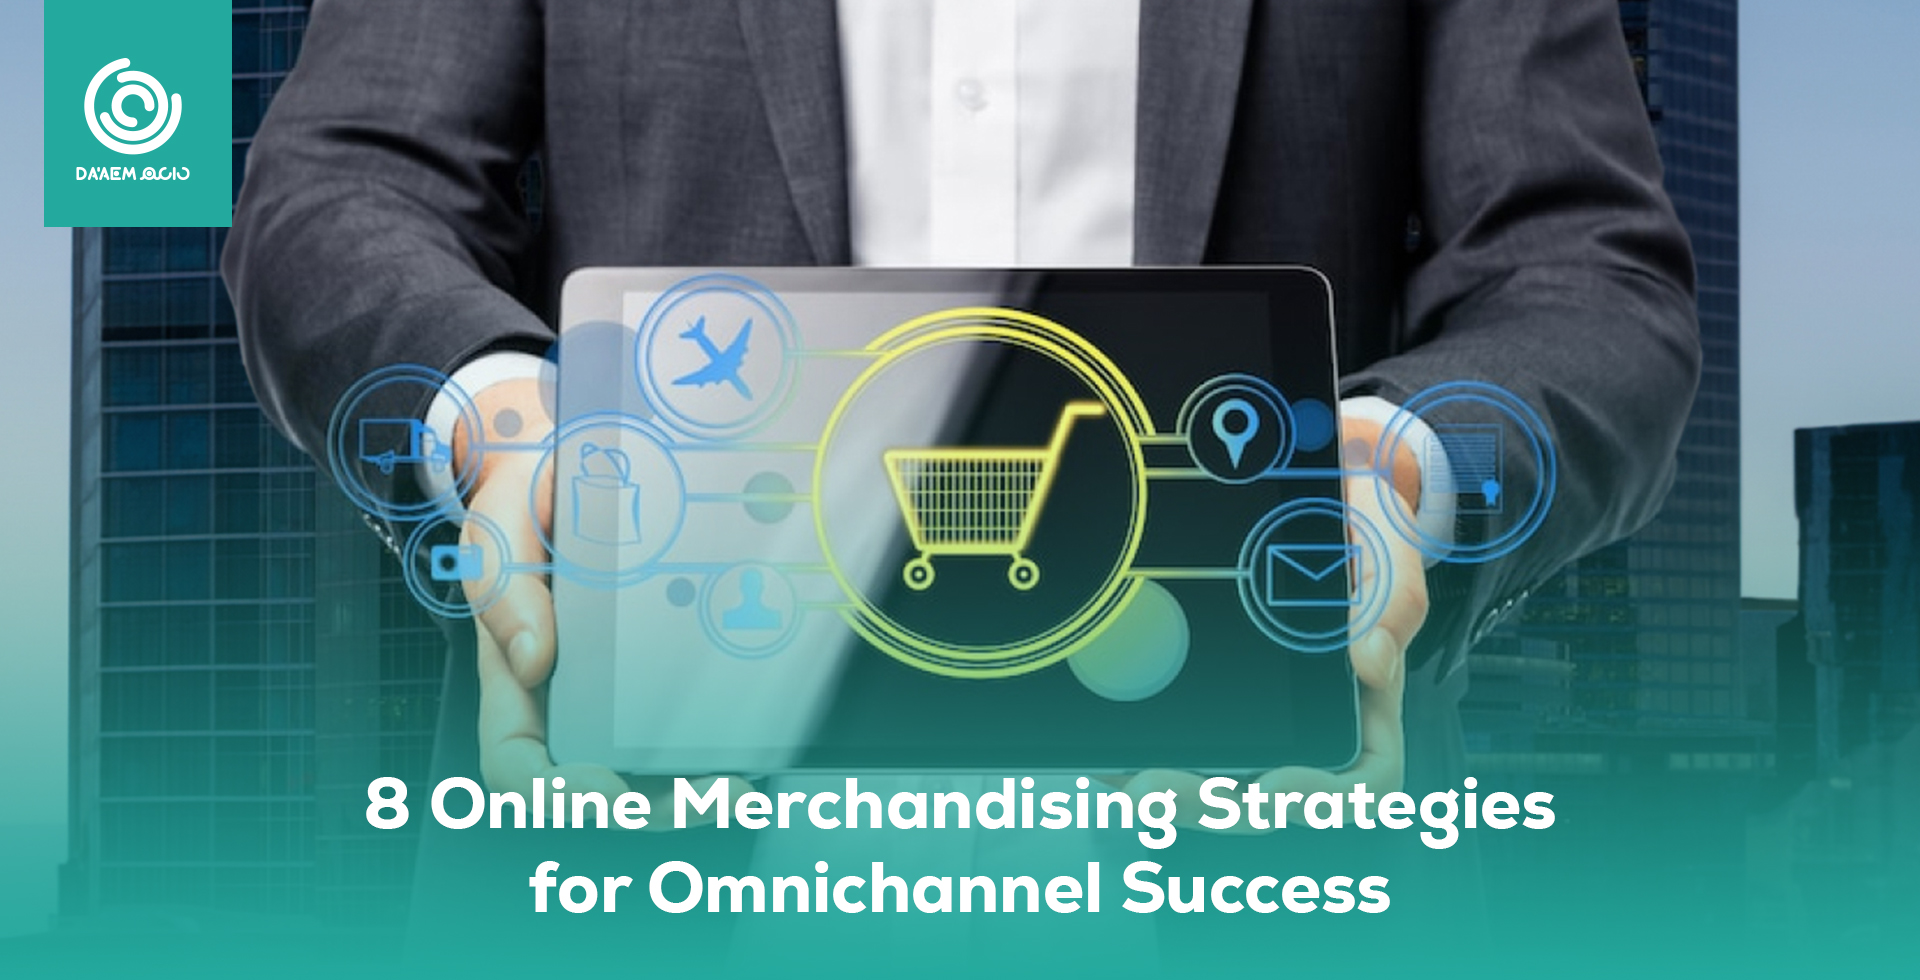 8 Online Merchandising Strategies for Omnichannel Success